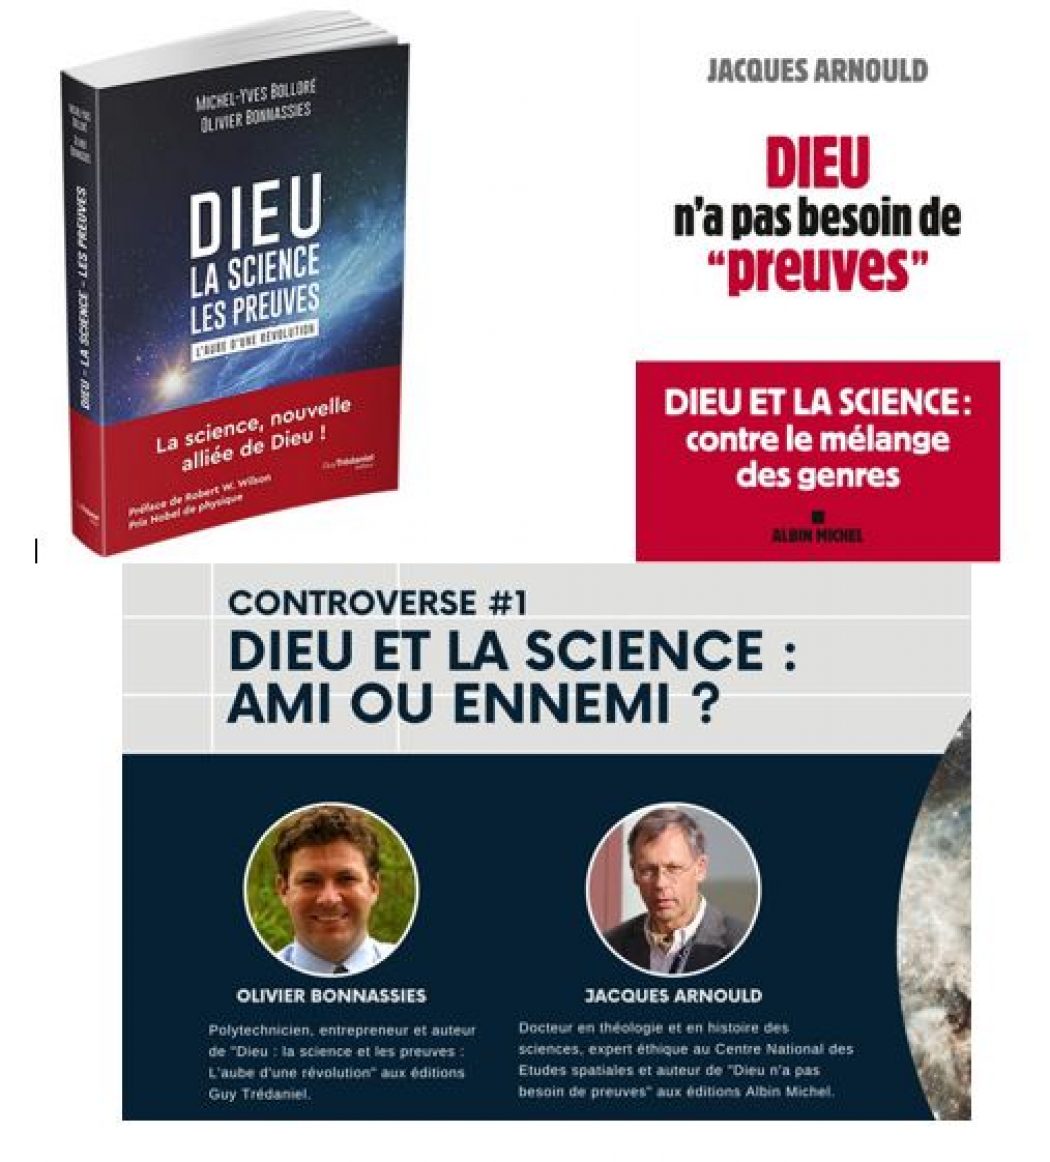 Conférence-débat à Versailles le 24 mai avec Olivier Bonnassies et Jacques Arnould : poursuivons la réflexion sur la foi et la science !